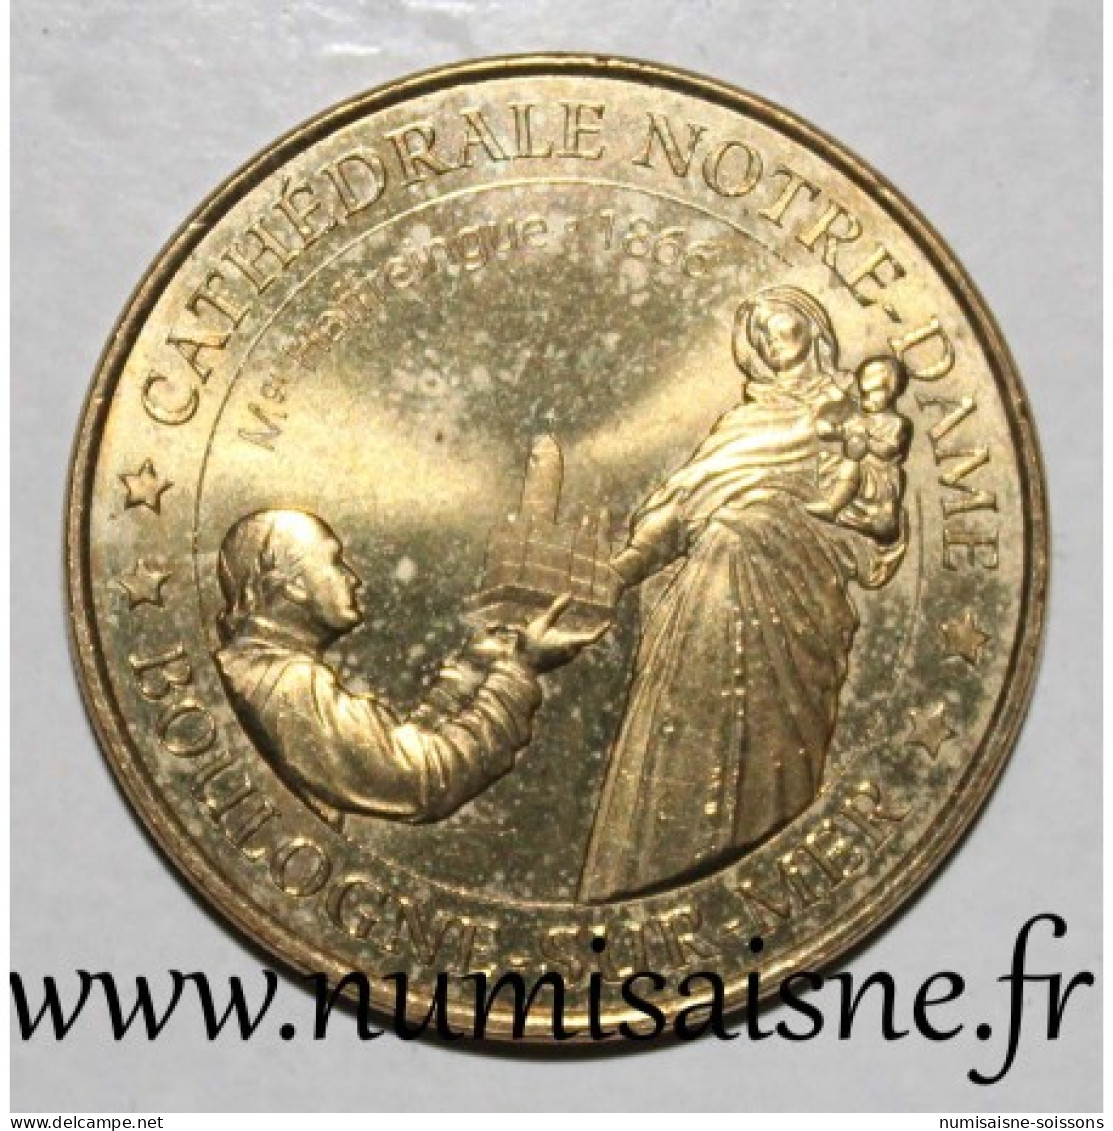 62 - BOULOGNE SUR MER - CATHÉDRALE NOTRE DAME - Monnaie De Paris - 2014 - 2014